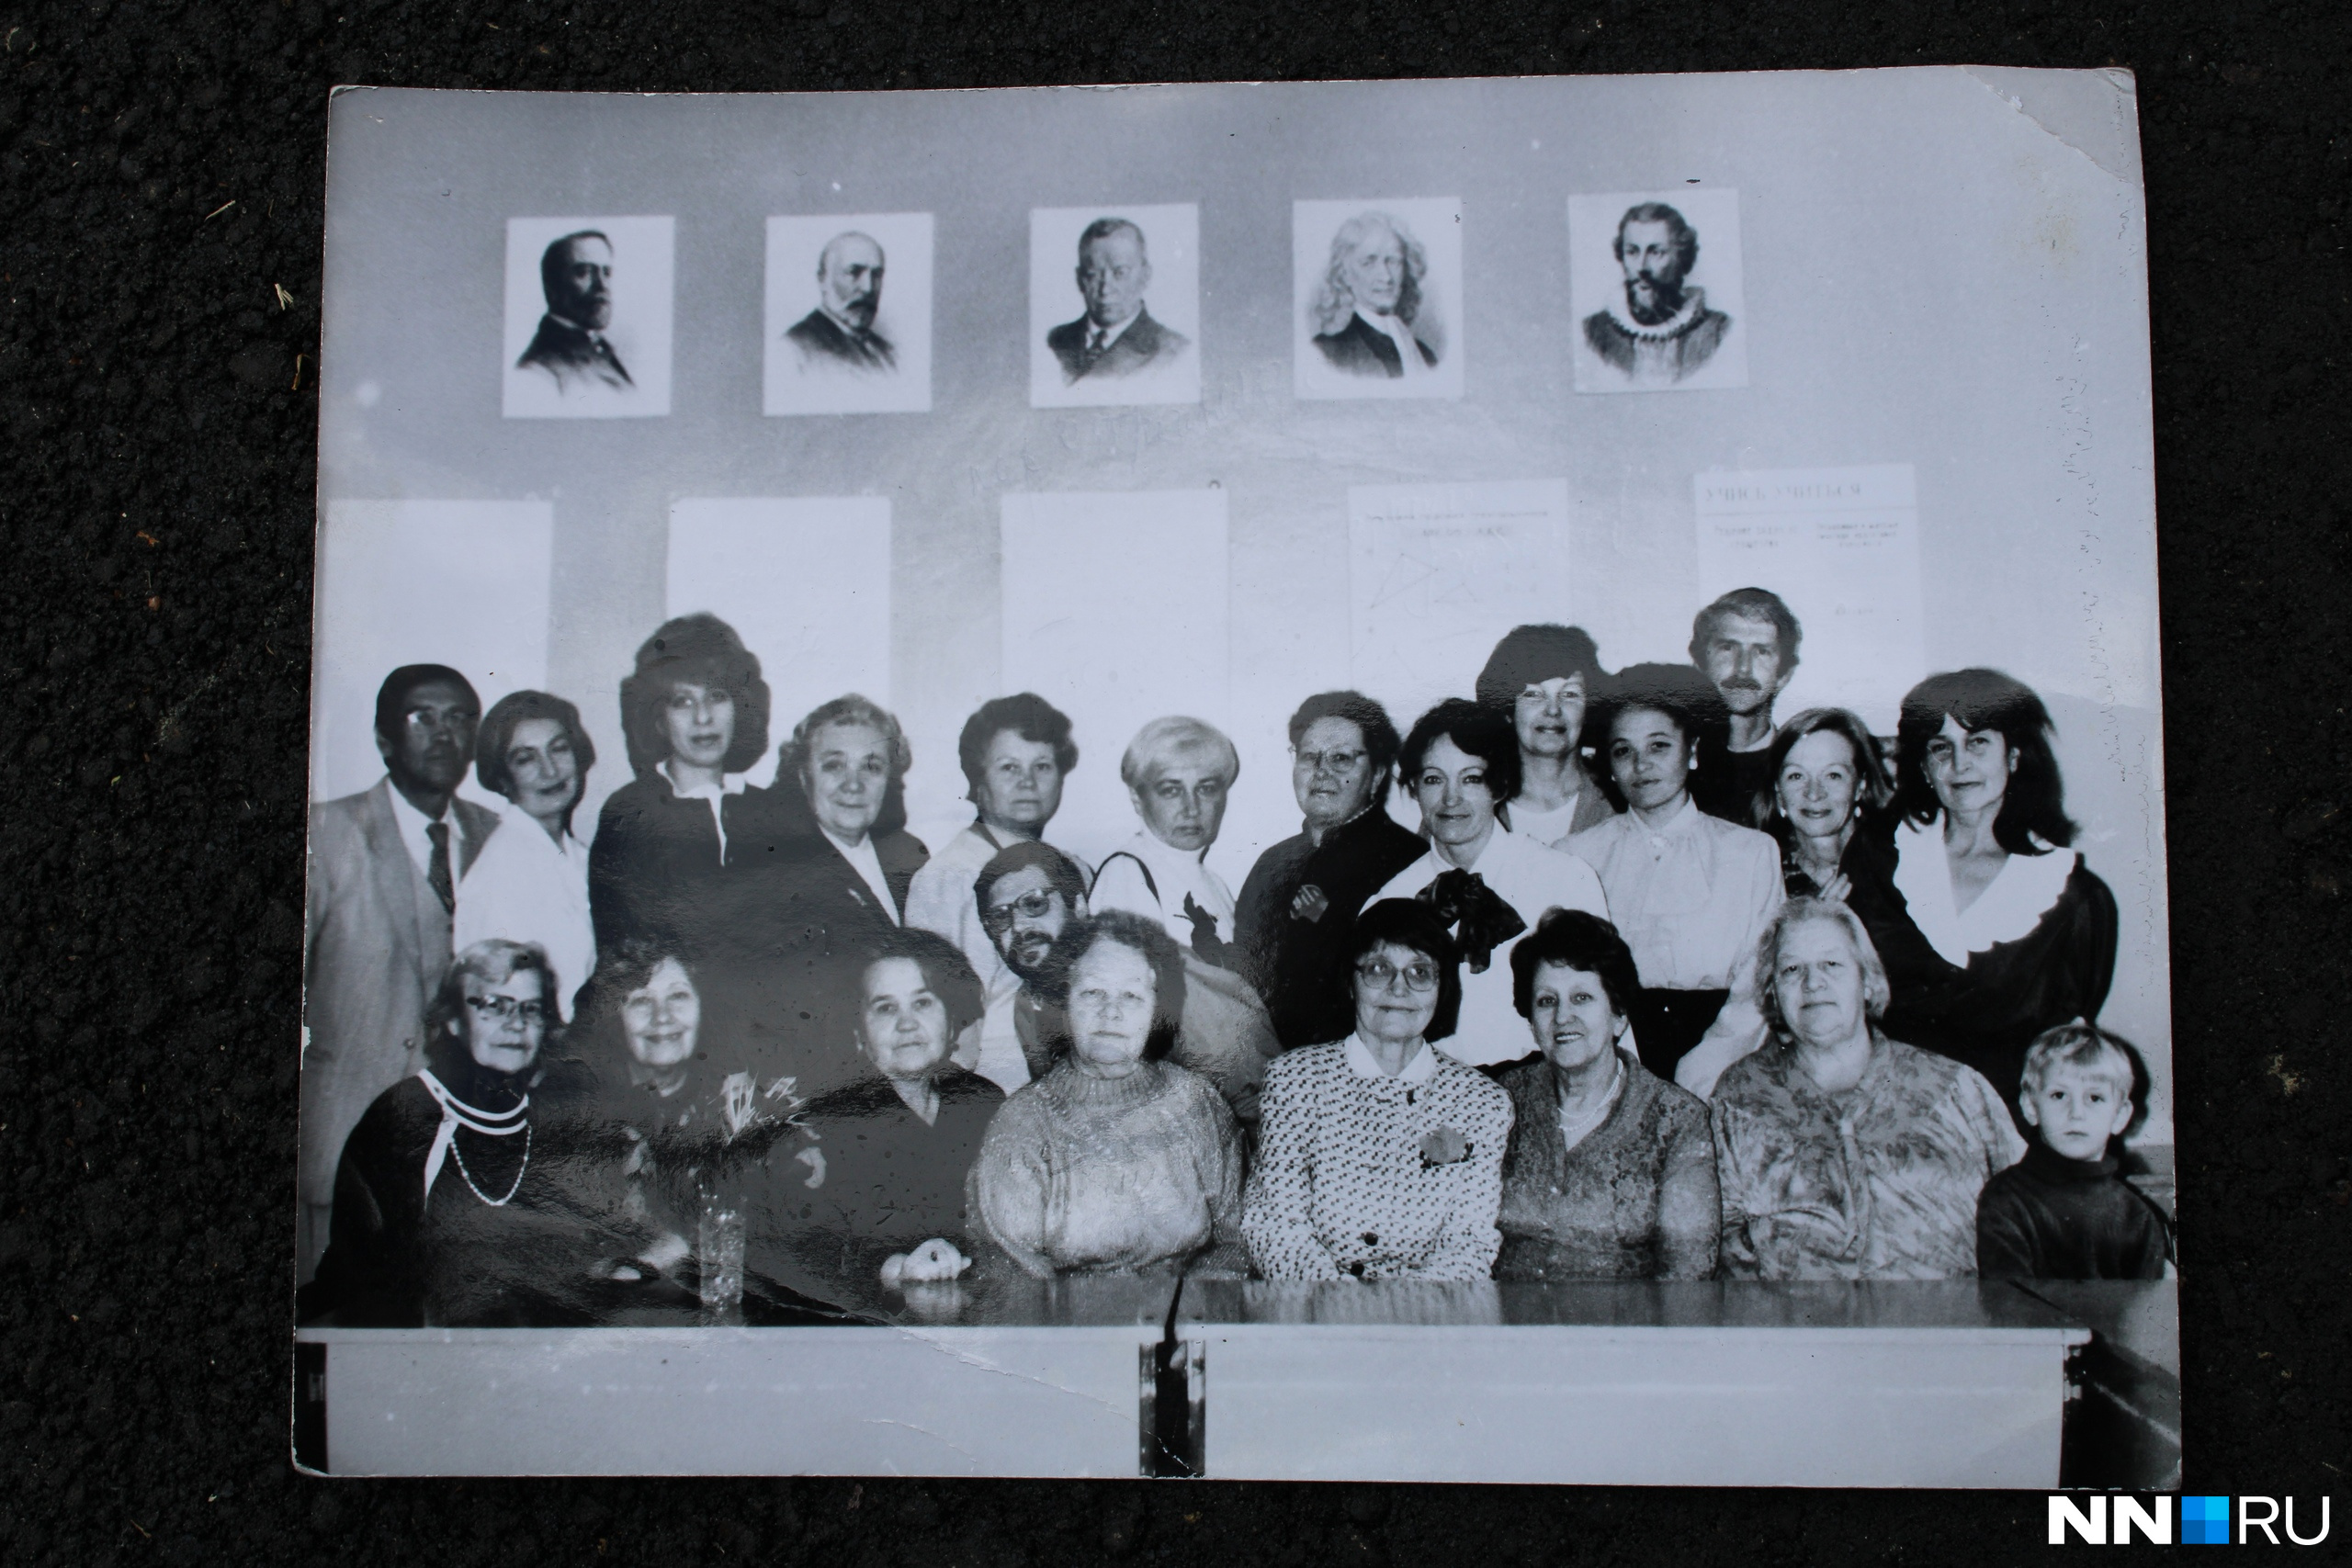 Татьяна Сахарова — в центре второго ряда, Александра Дегтярева — в нижнем ряду, четвертая справа